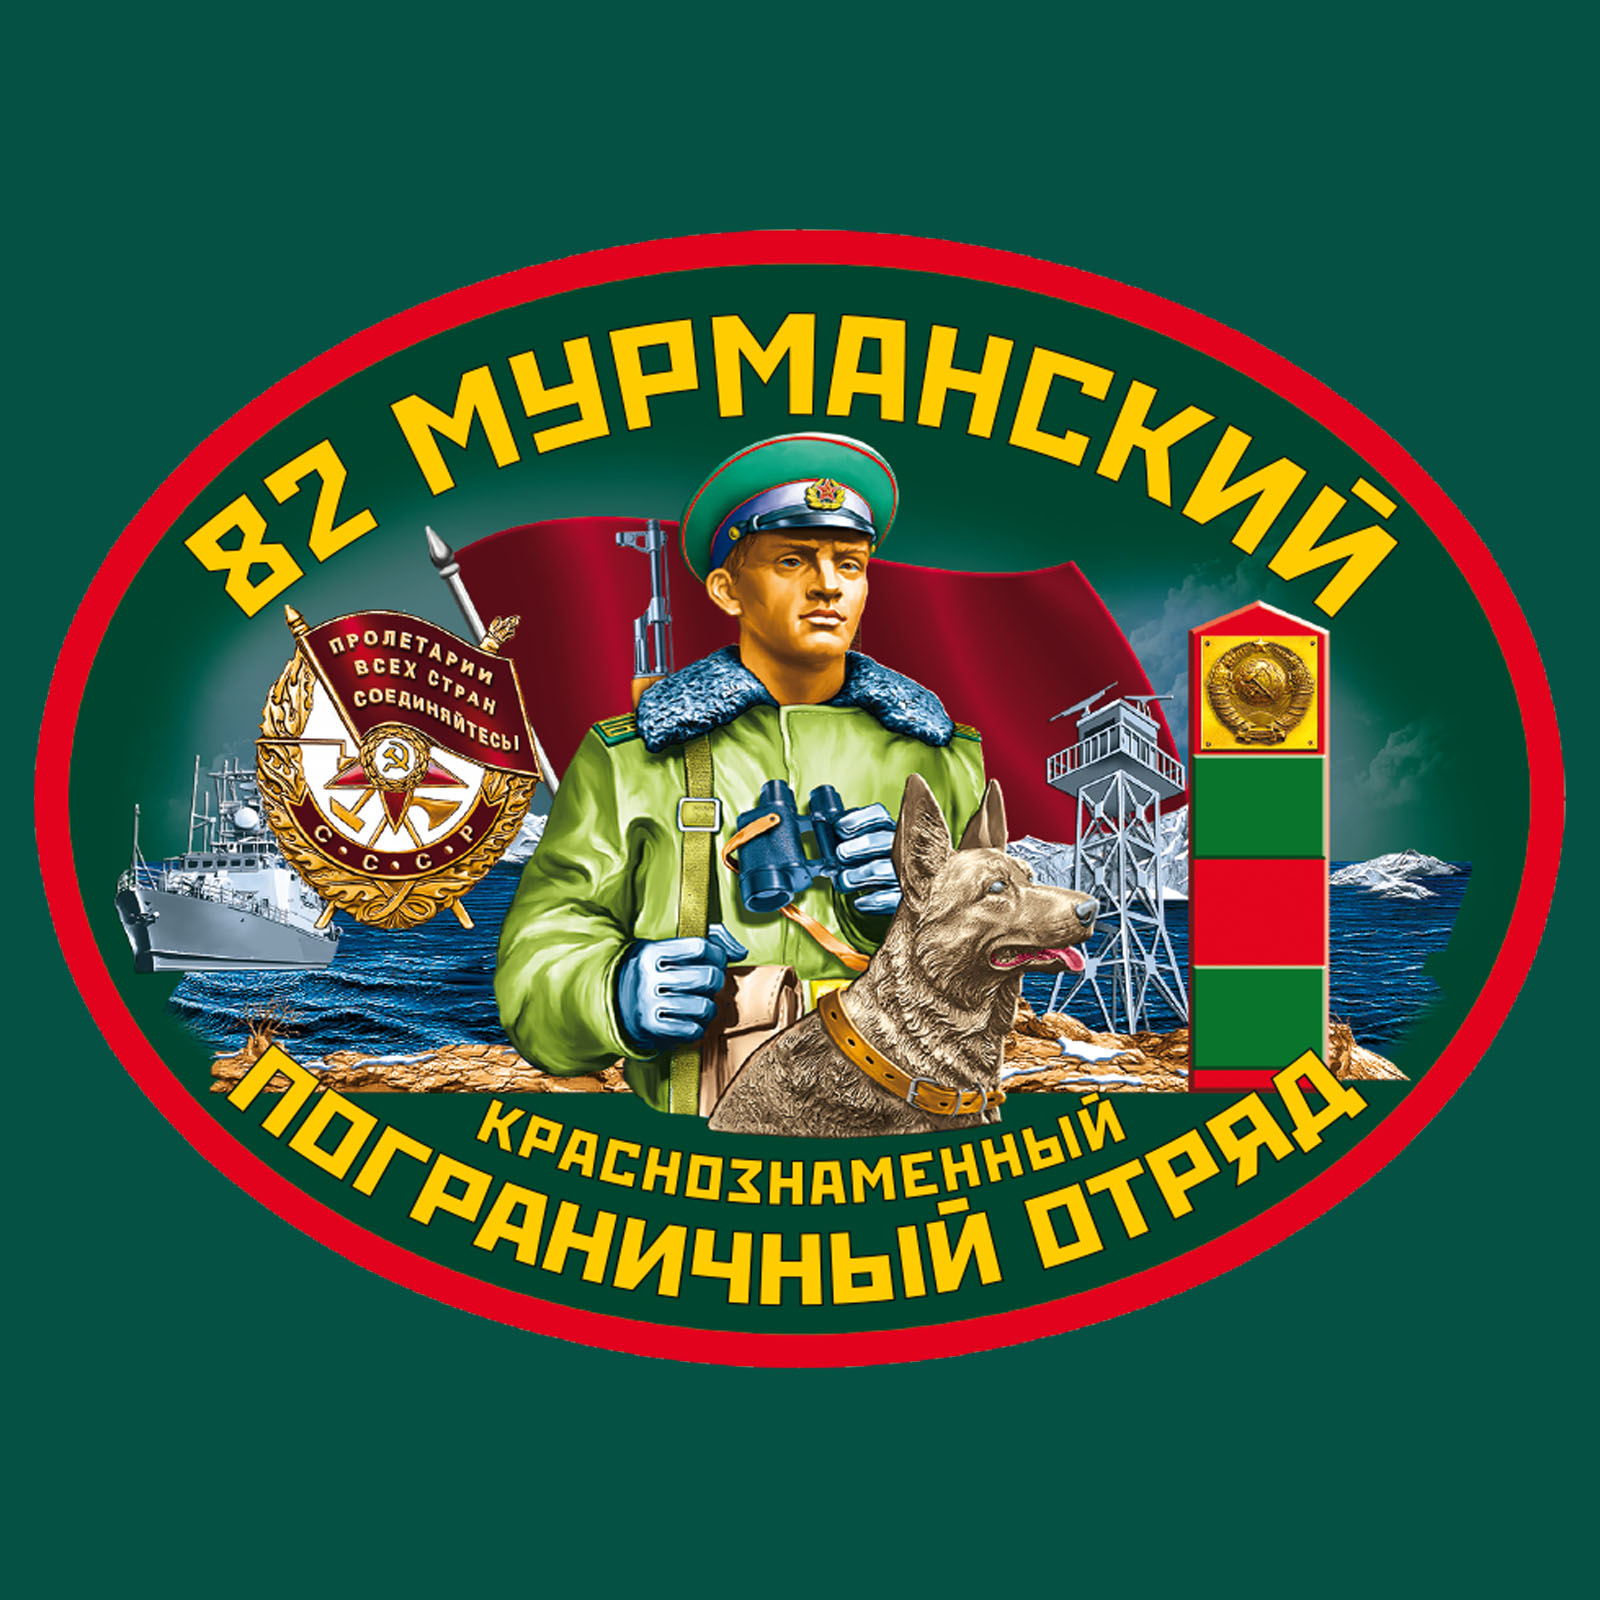 Зелёная футболка "82 Мурманский пограничный отряд" 